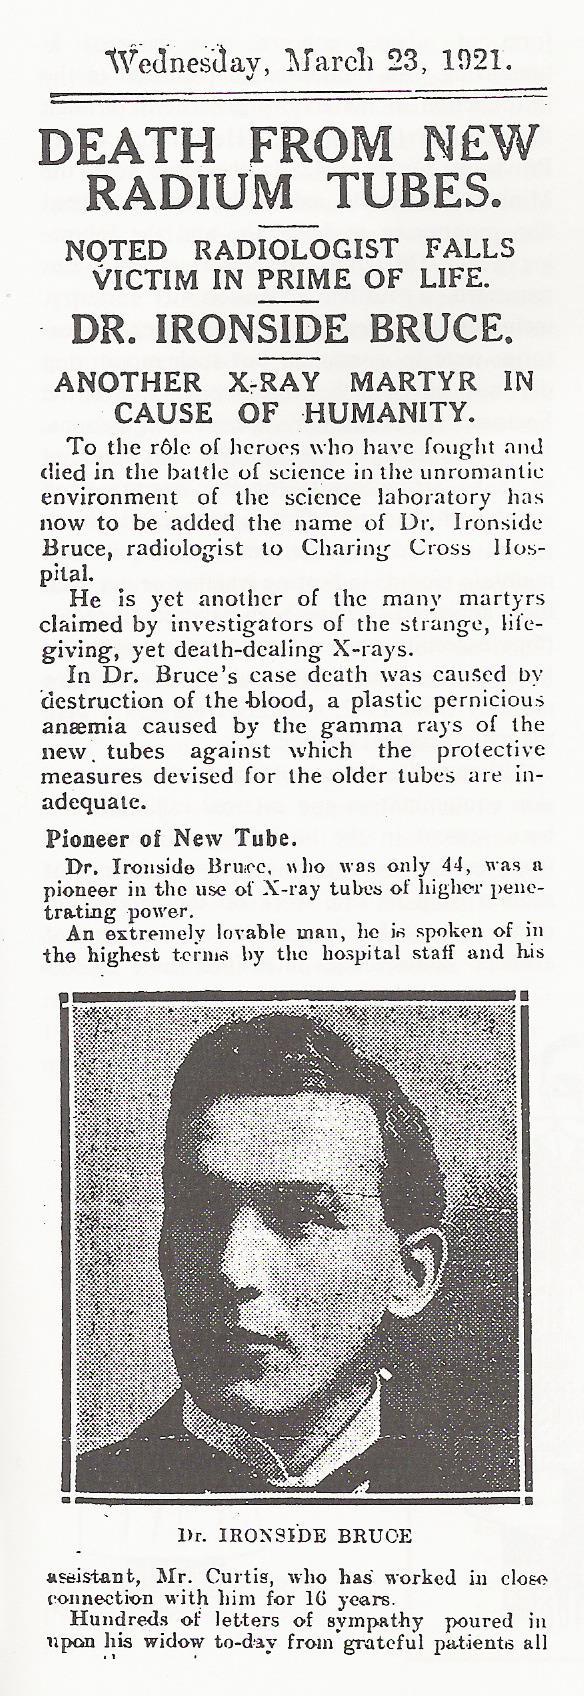 ΠΑΡΕΝΕΡΓΕΙΕΣ Αγγλική εφημερίδα αναφέρει το θάνατο του Dr Ironside Bruce το 1921, σε ηλικία 44 ετών από